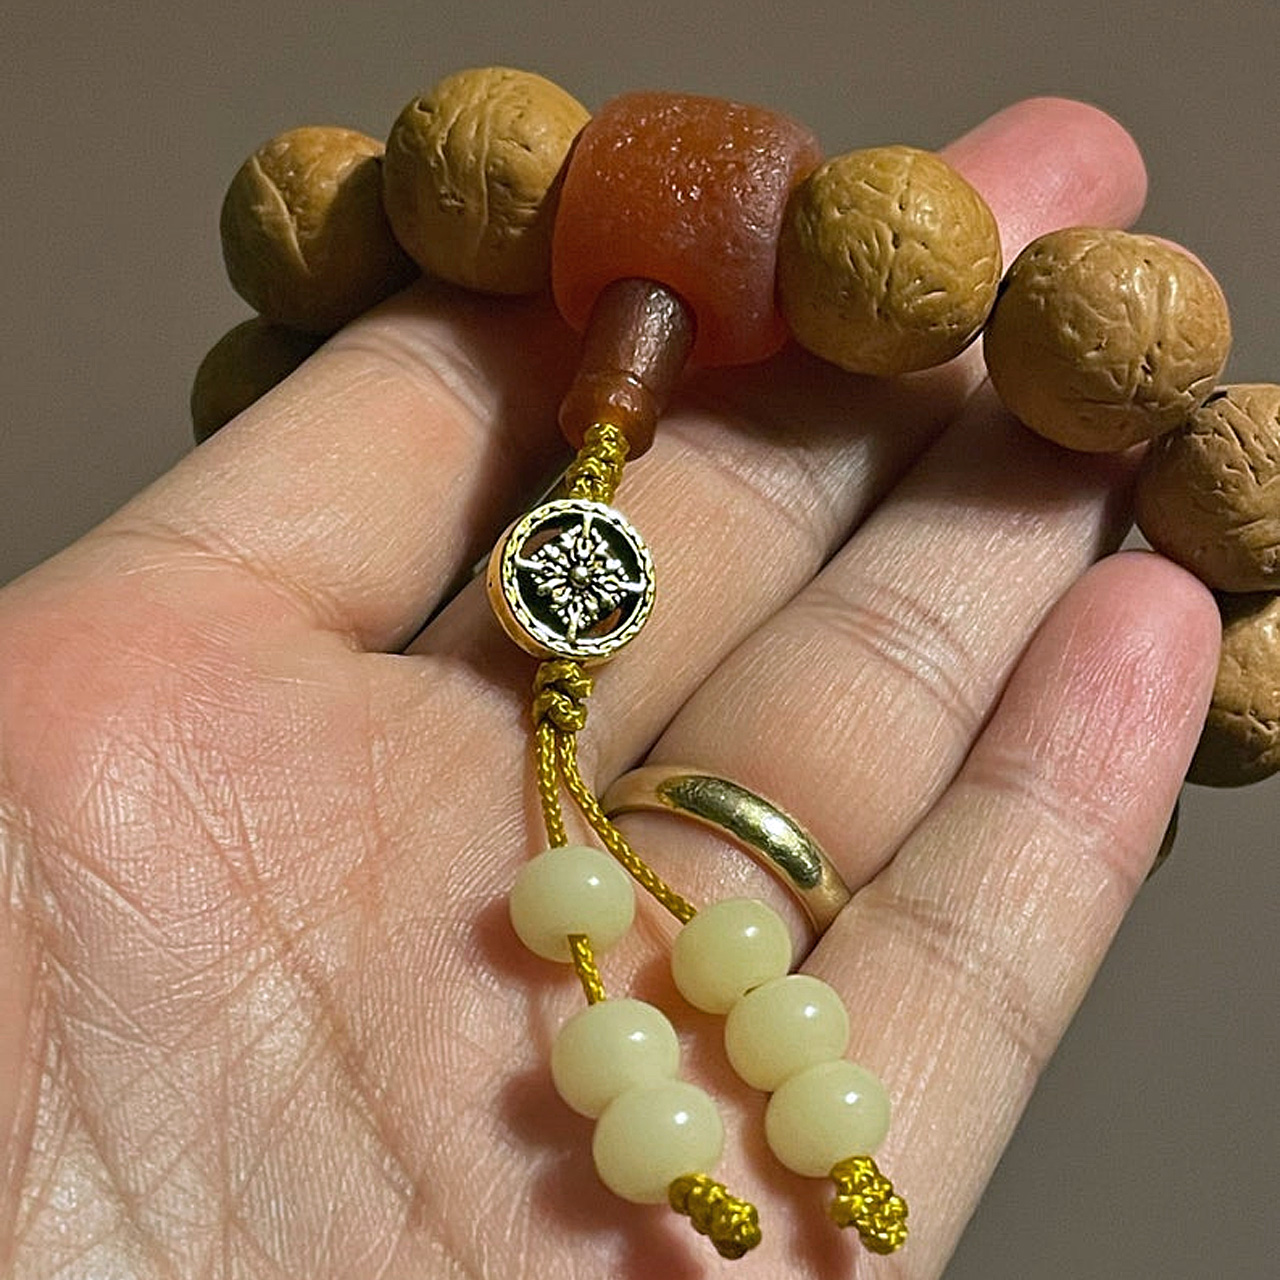 Bodhi Seed Meditation Bead Bracelet - Red String